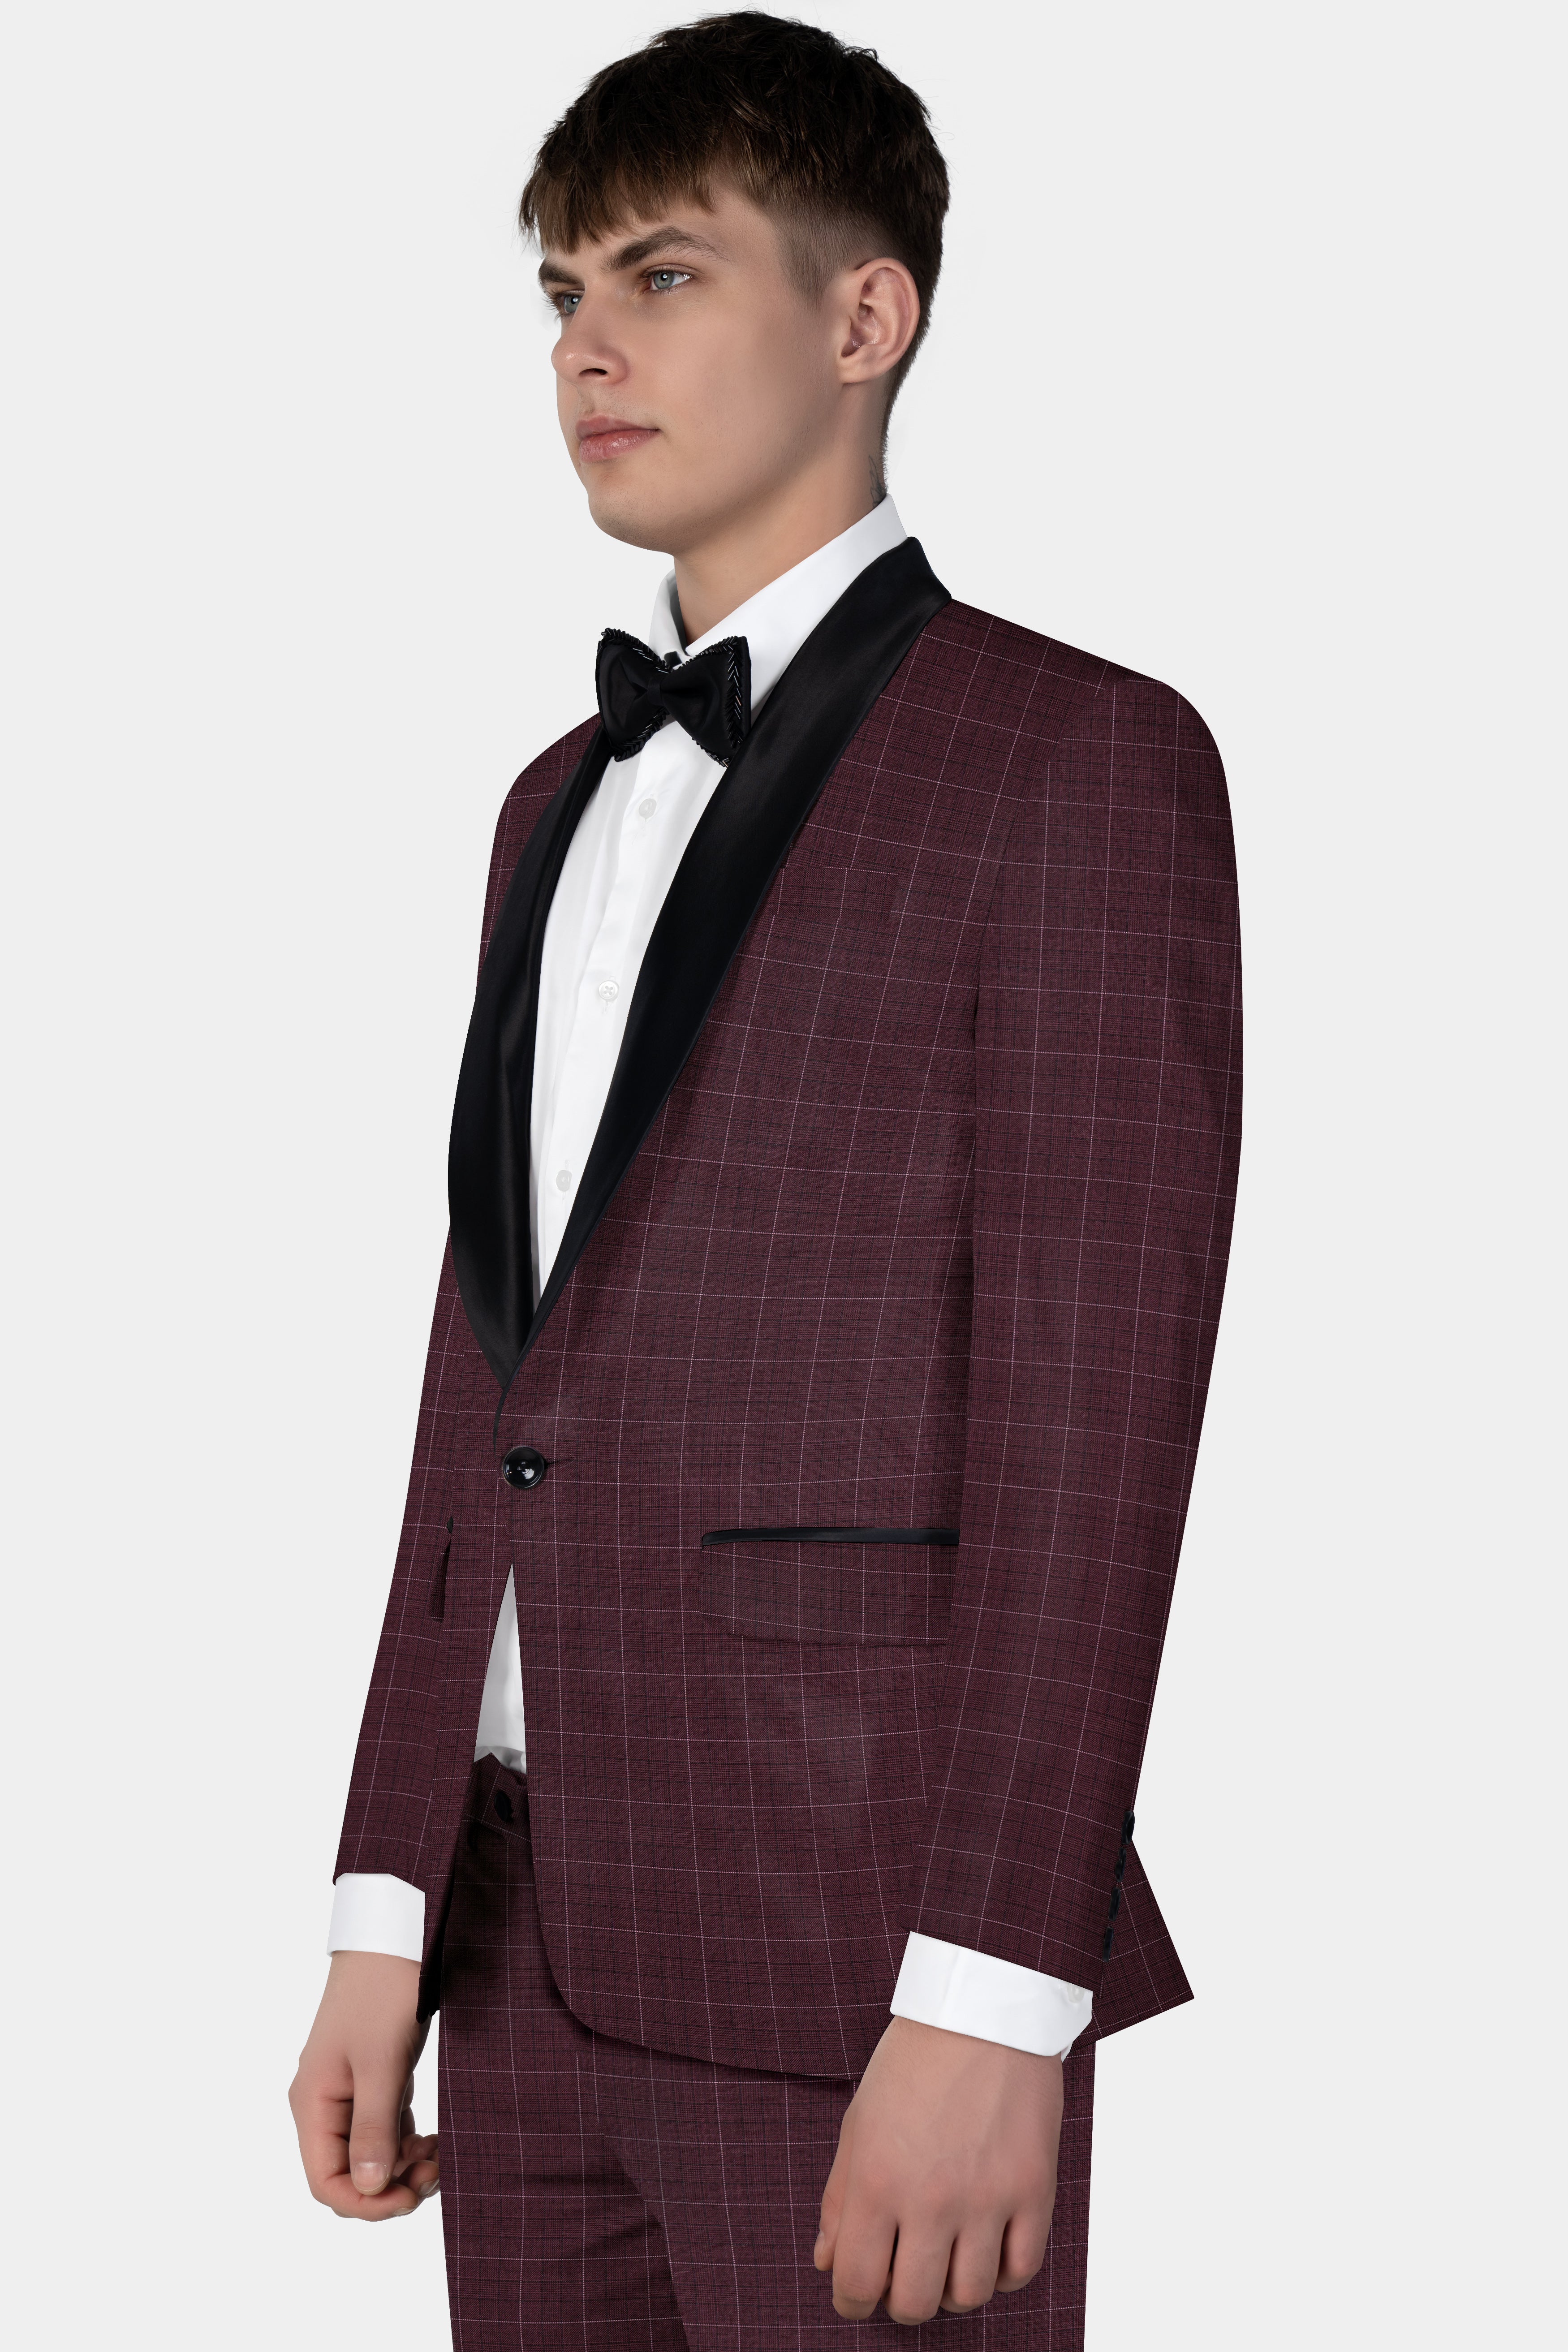 Iroko maroon Windowpane Wool Rich Tuxedo Suit